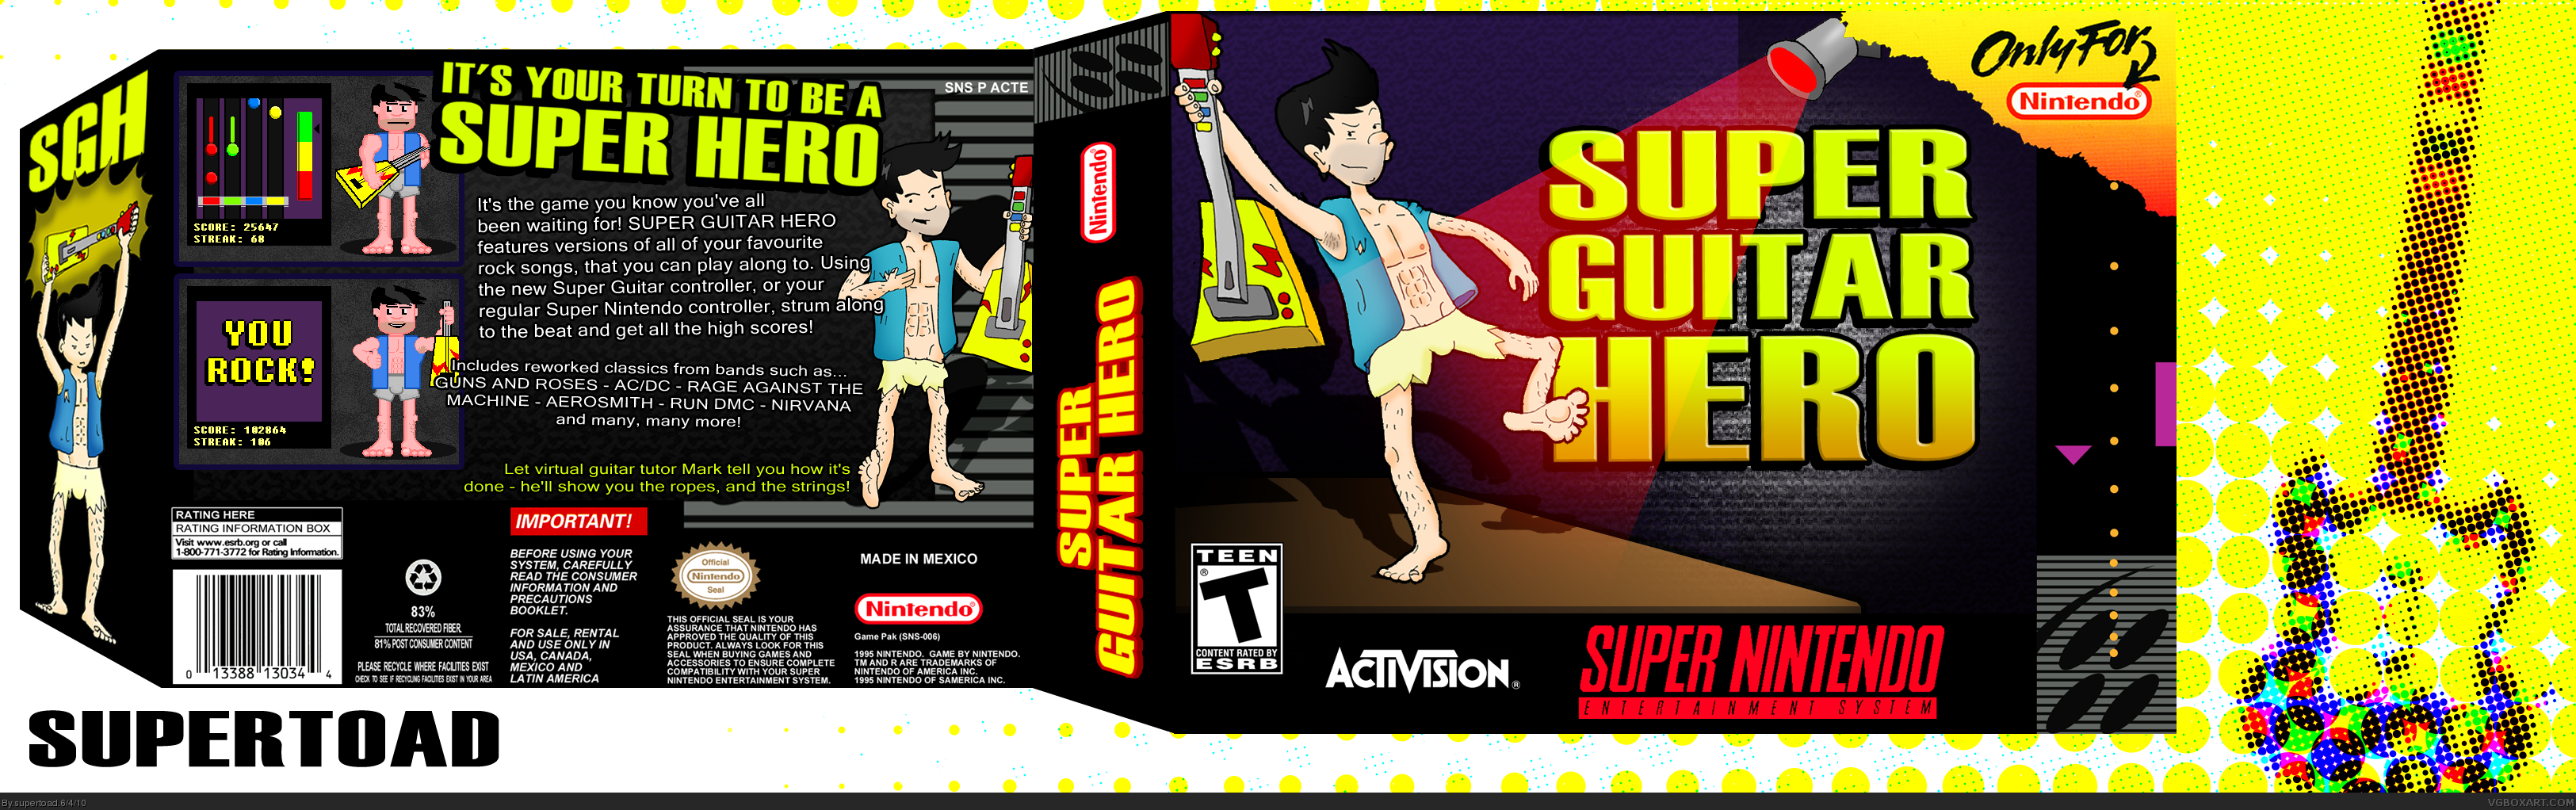 Super Guitar Hero box cover